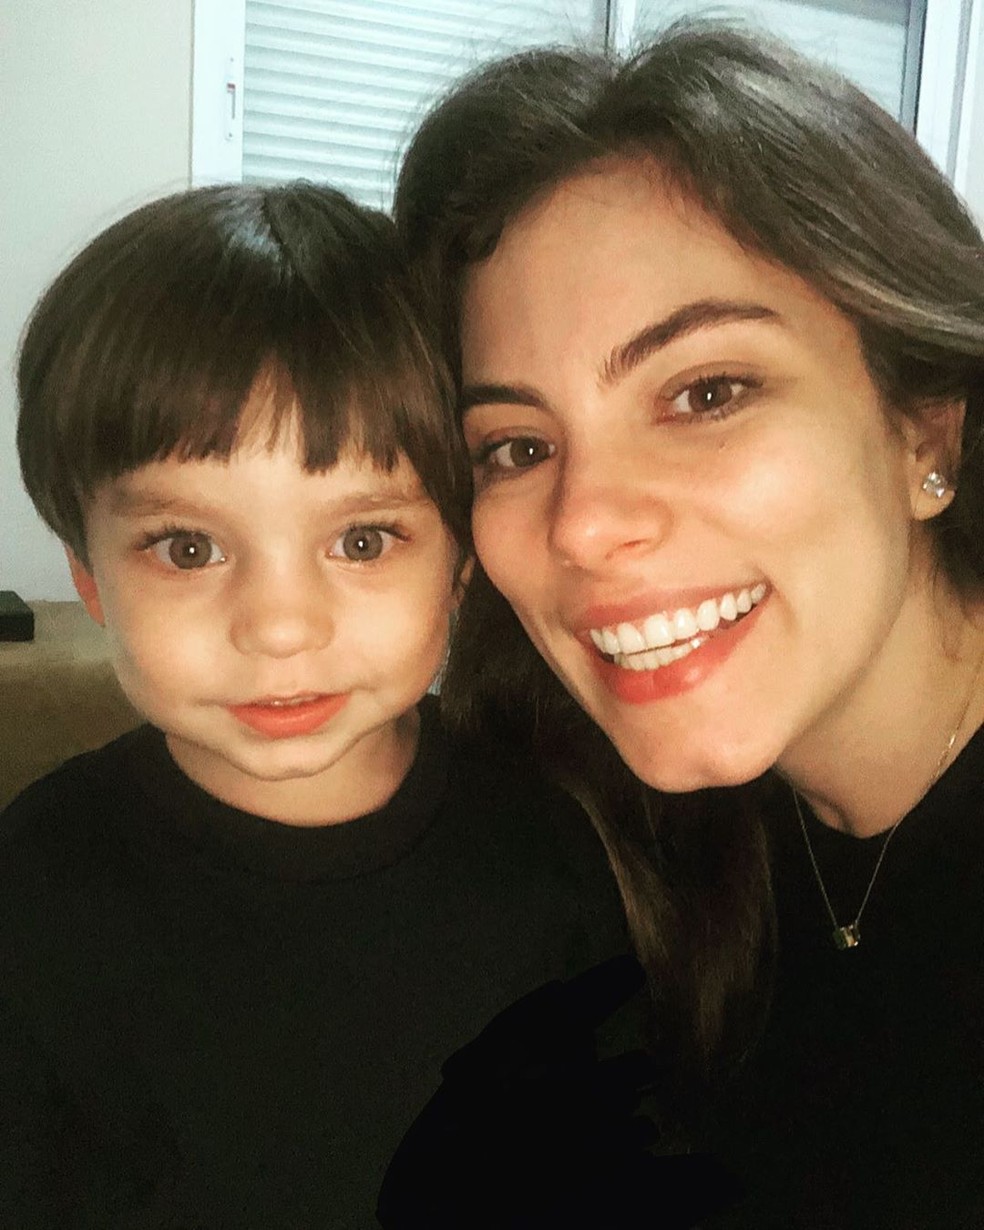 Júlio é o primeiro filho de Bruna Hamú, o menino tem dois anos de idade — Foto: Reprodução/Instagram